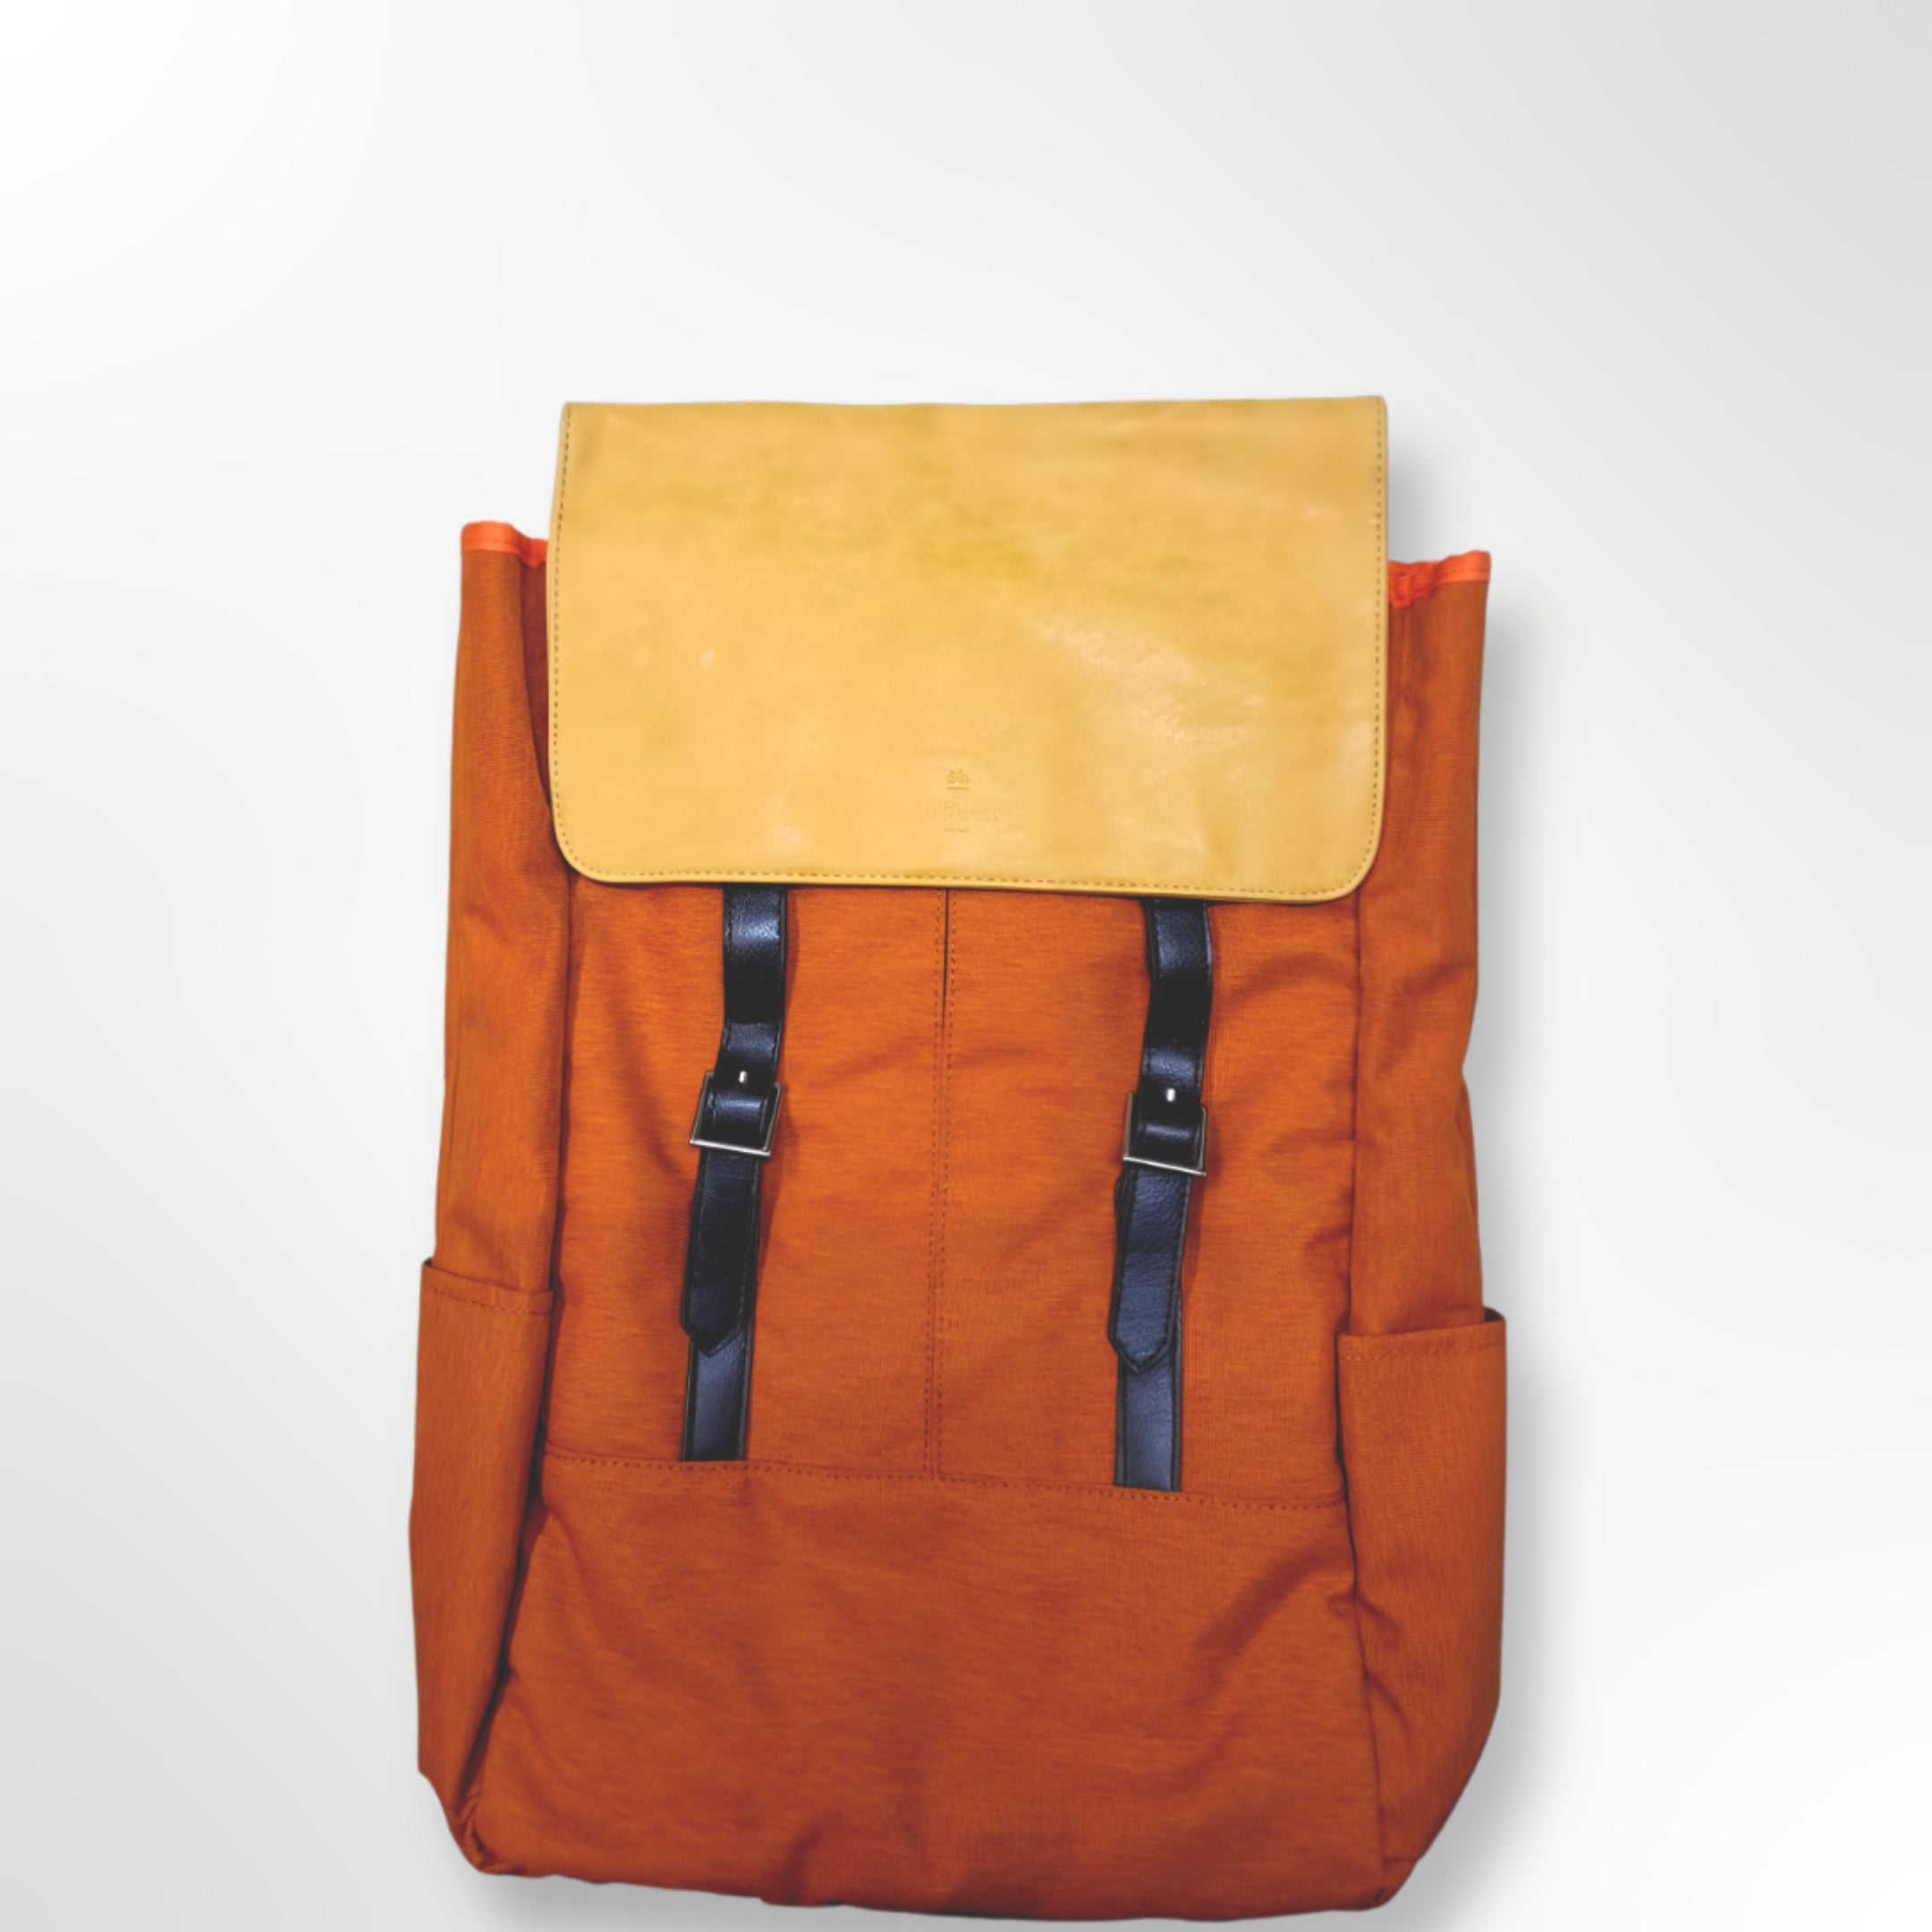 Nifteen – Medic 15” Laptop Bag (Big) - Orange